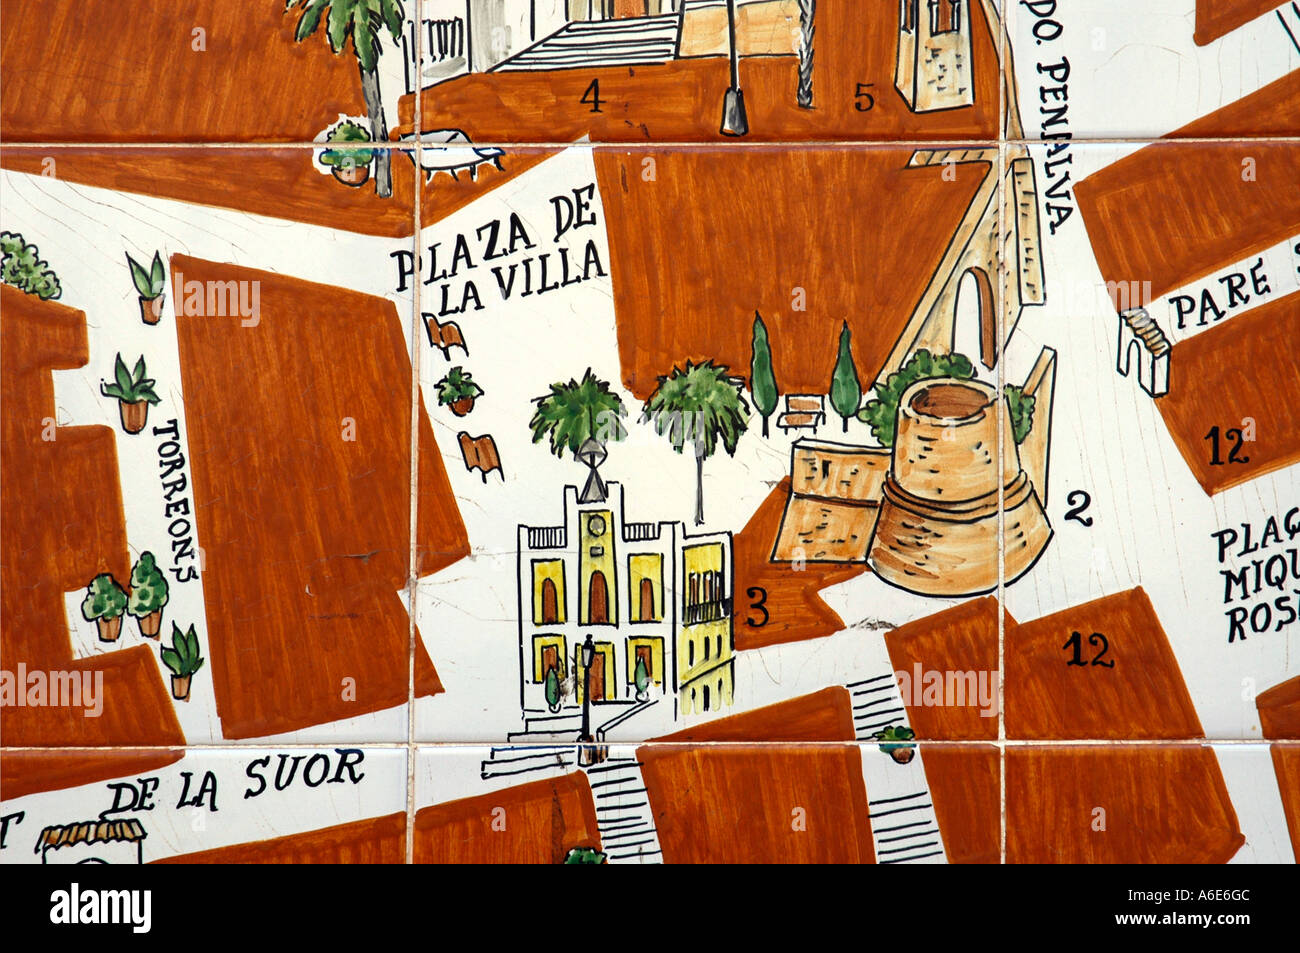 Carreaux espagnols avec plan de ville et des azulejos, Calpe, Costa Blanca, Espagne Banque D'Images